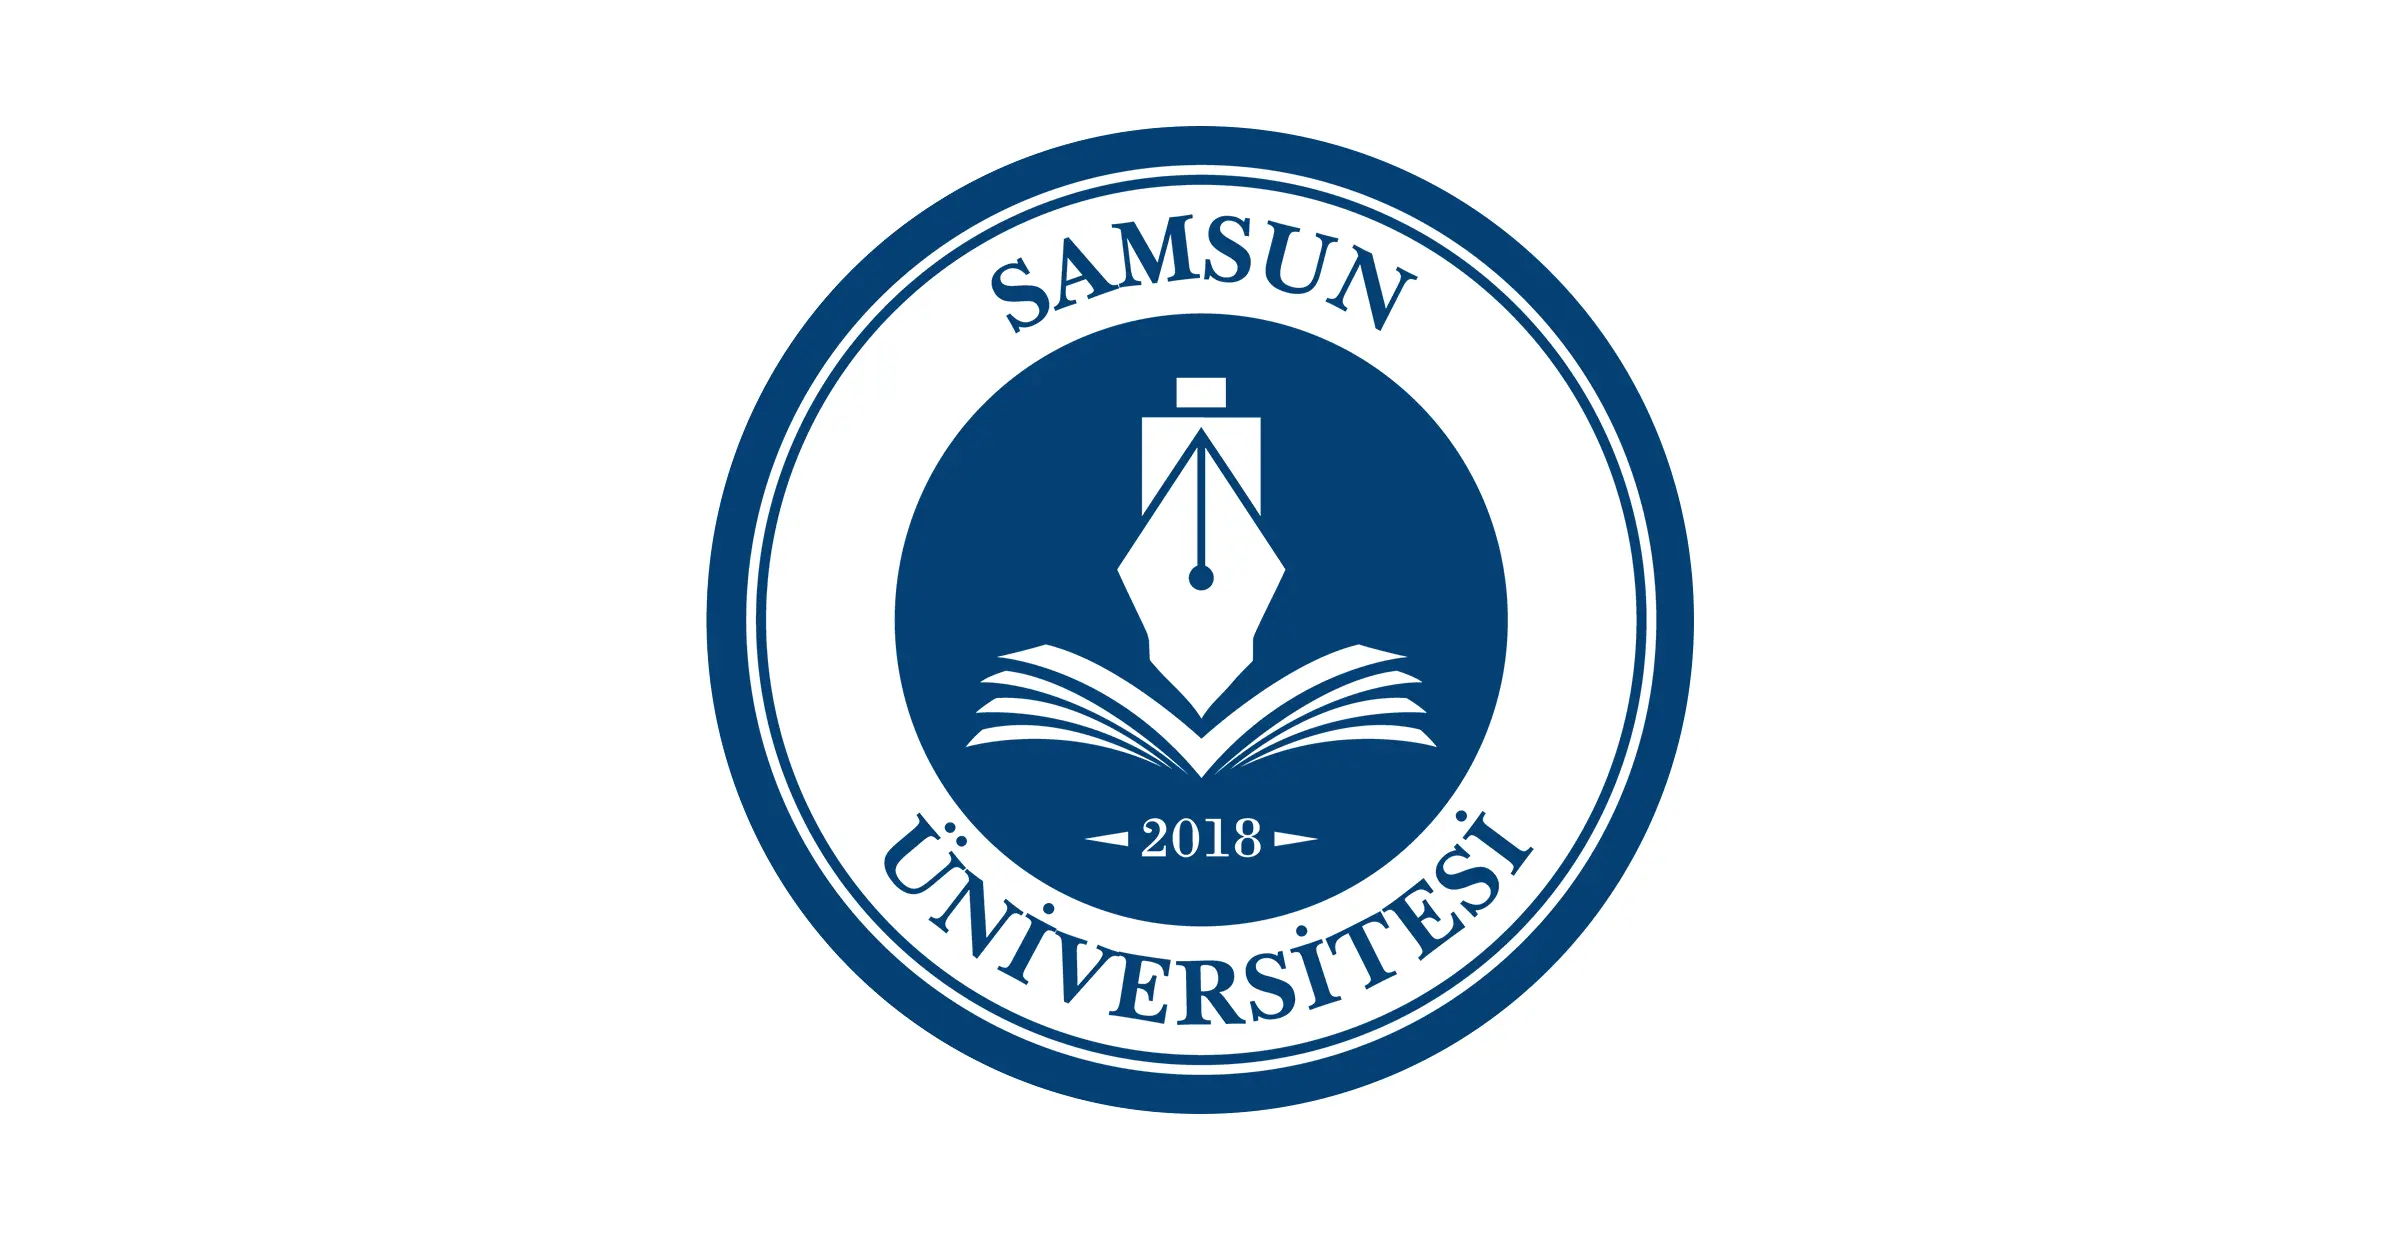 جامعة سامسون Samsun Üniversitesi هي ثاني جامعة حكومية تأسست في سامسون في 18 مارس 2018 ، عندما تم ربط الكليات والأقسام التابعة لجامعة سامسون